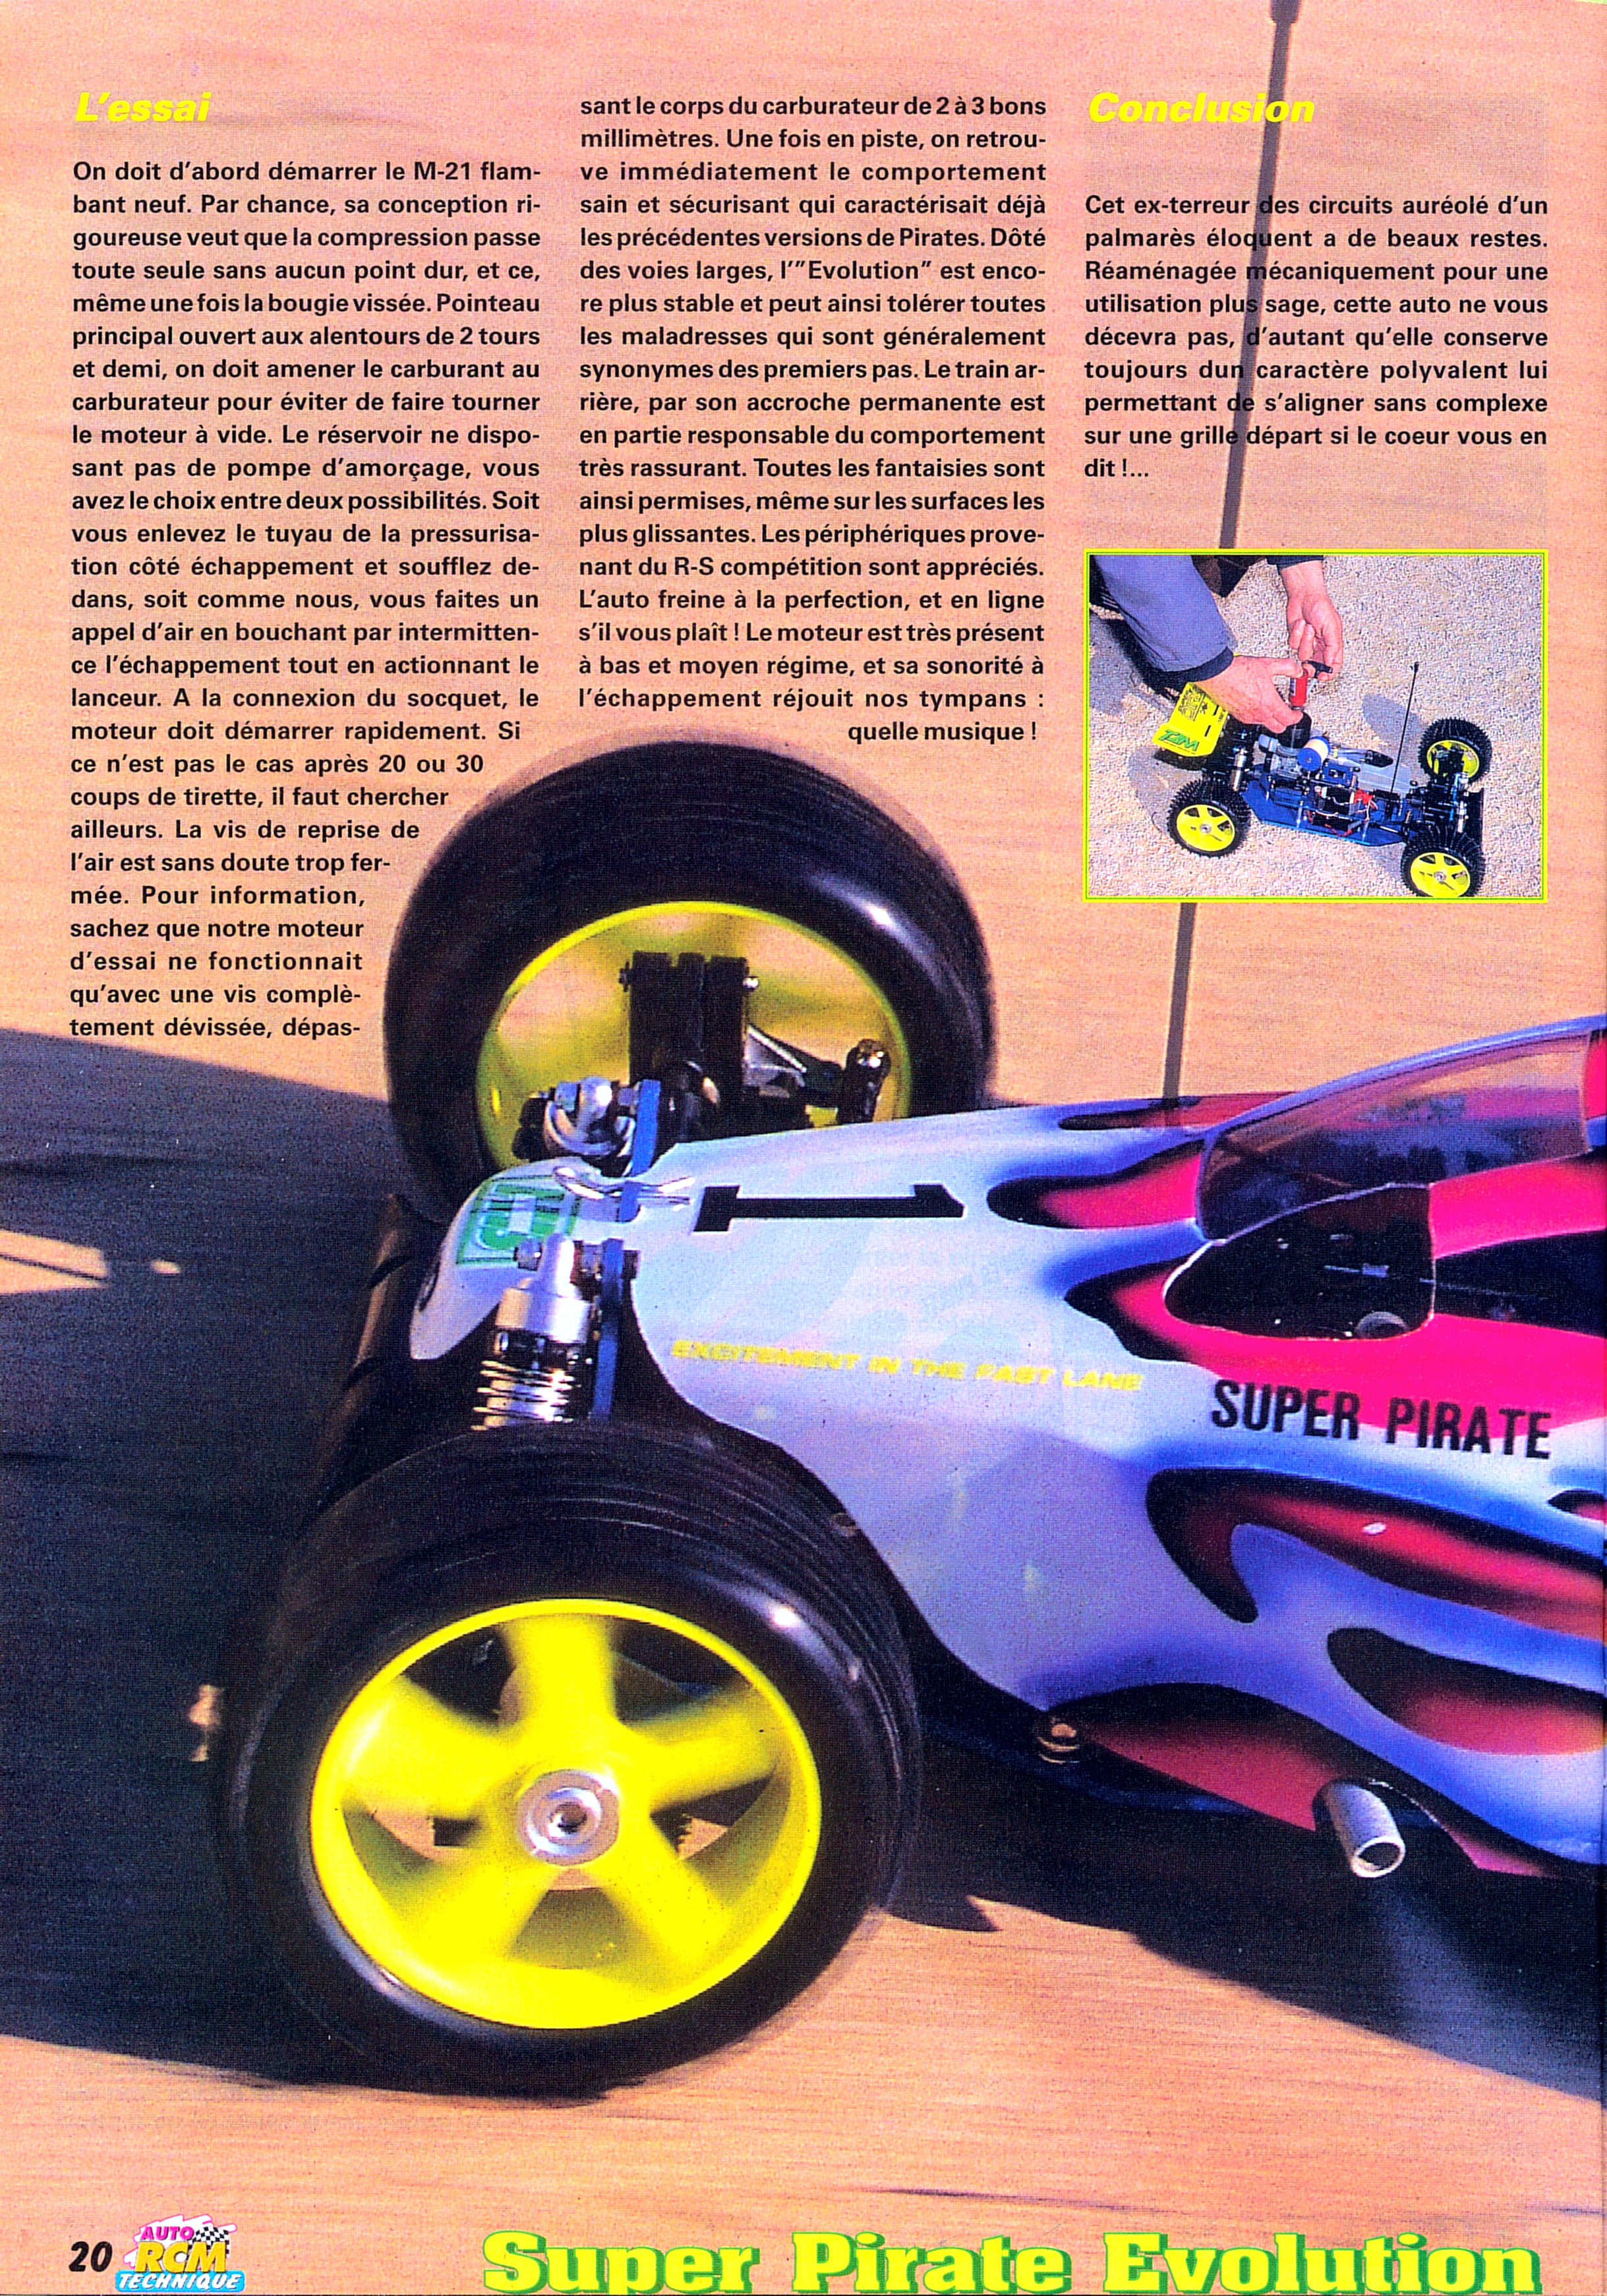 Rétro Modélisme • Super Pirate Evolution (Essai voiture) Philippe Boeri TT  1/8 Thermique T2M (Auto RCM Technique n°69 M/A/1999)